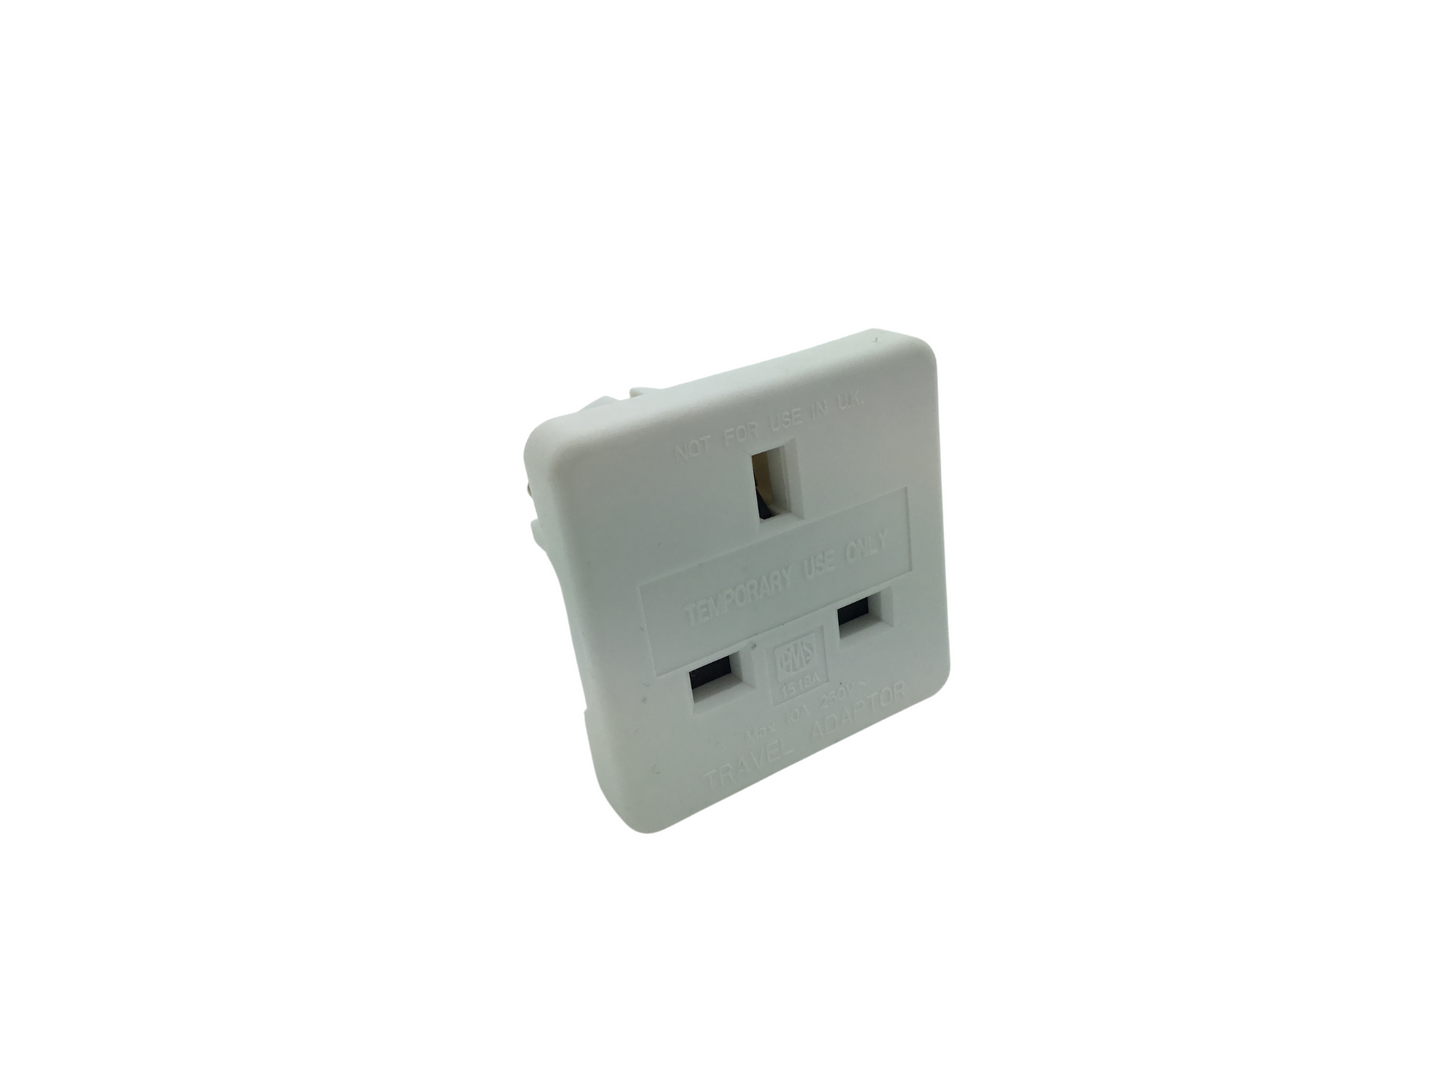 European Plug to UK 3 Pin Socket Travel Adapter - White